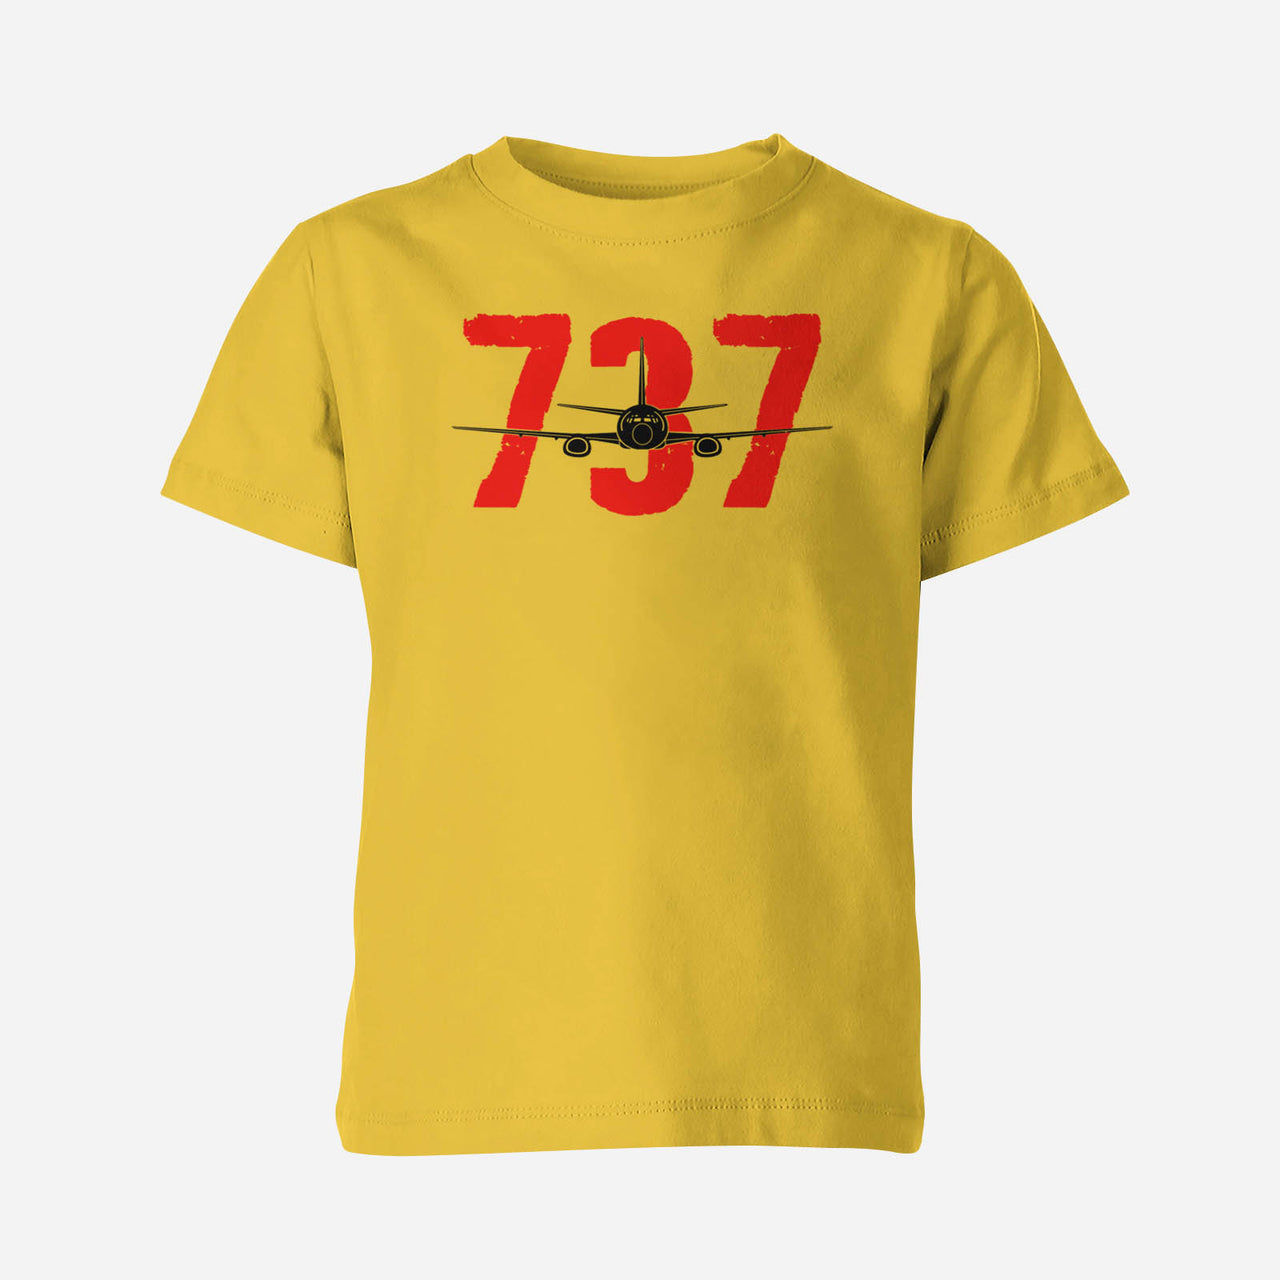 Boeing 737 Designed Children T-Shirts